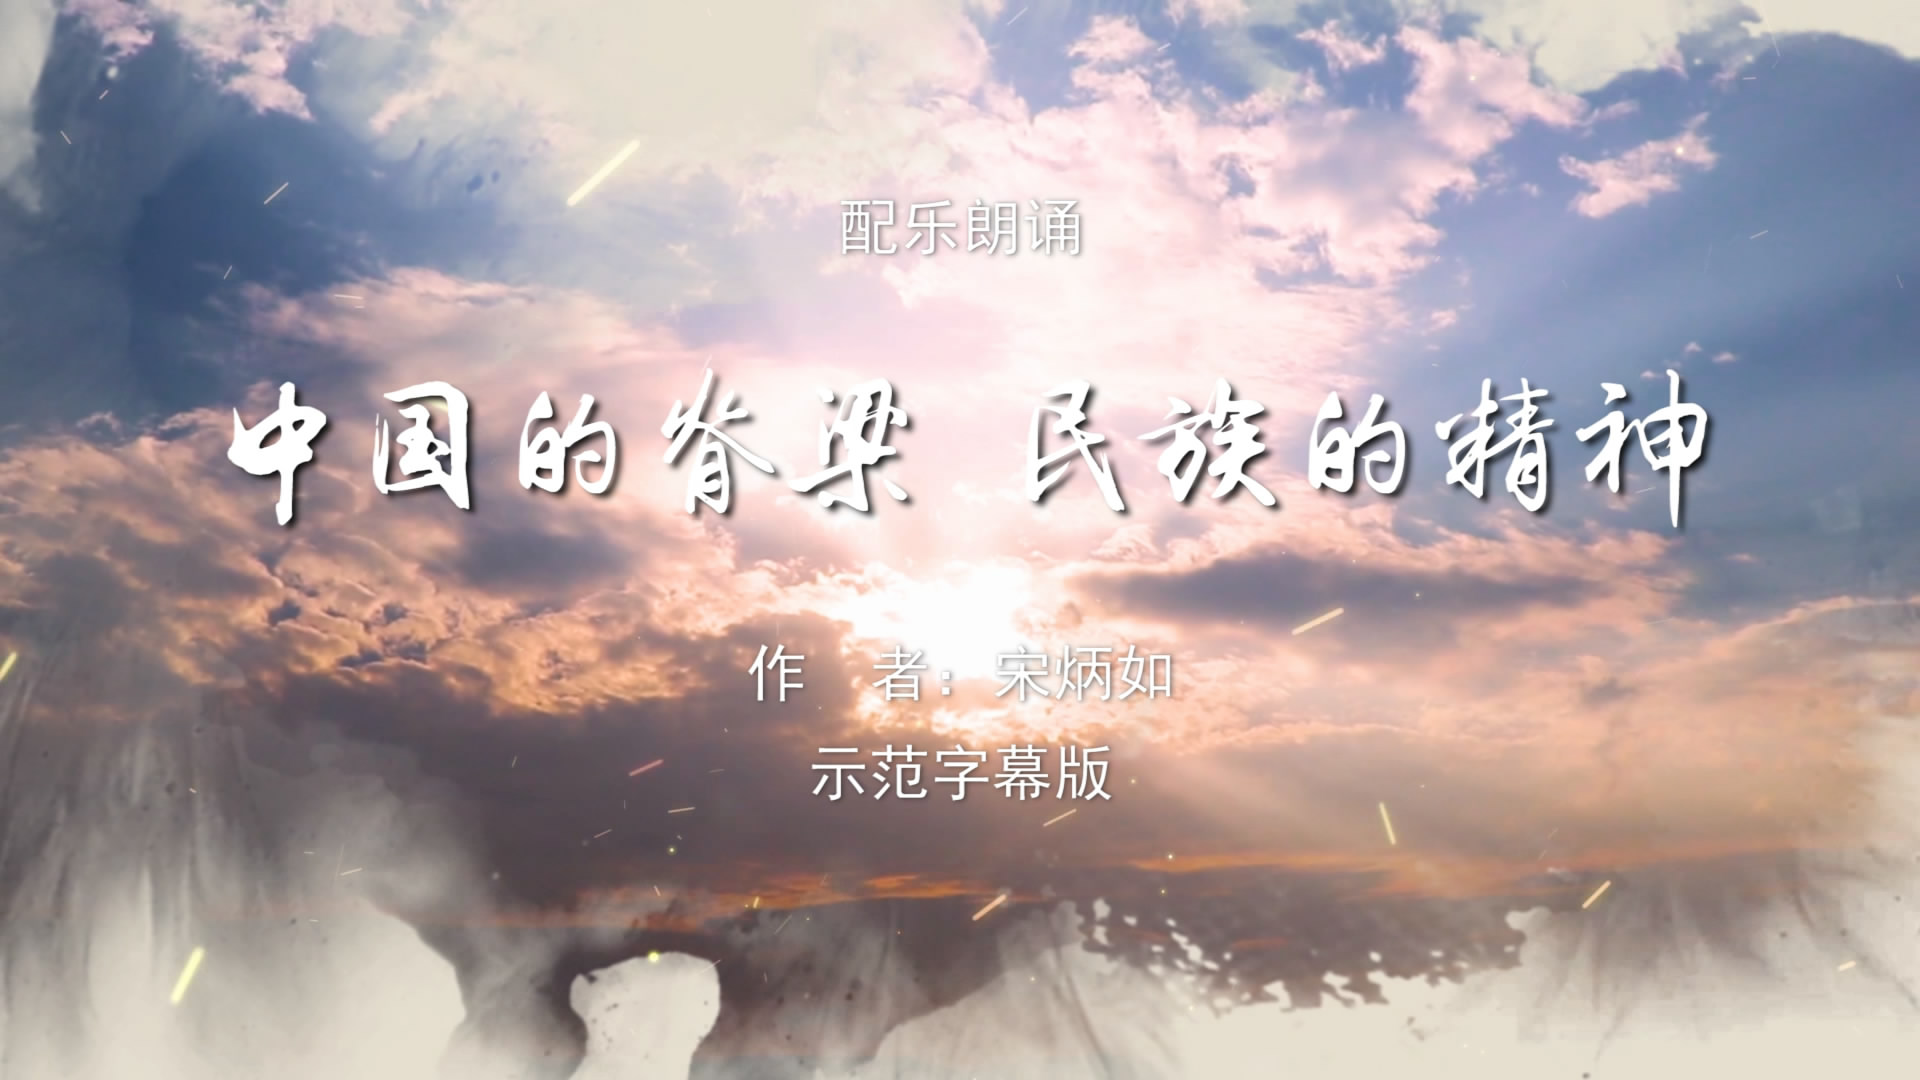 中国的脊梁民族的精神 少儿童抗疫诗歌朗诵配乐伴奏舞台演出LED背景大屏幕视频素材TV